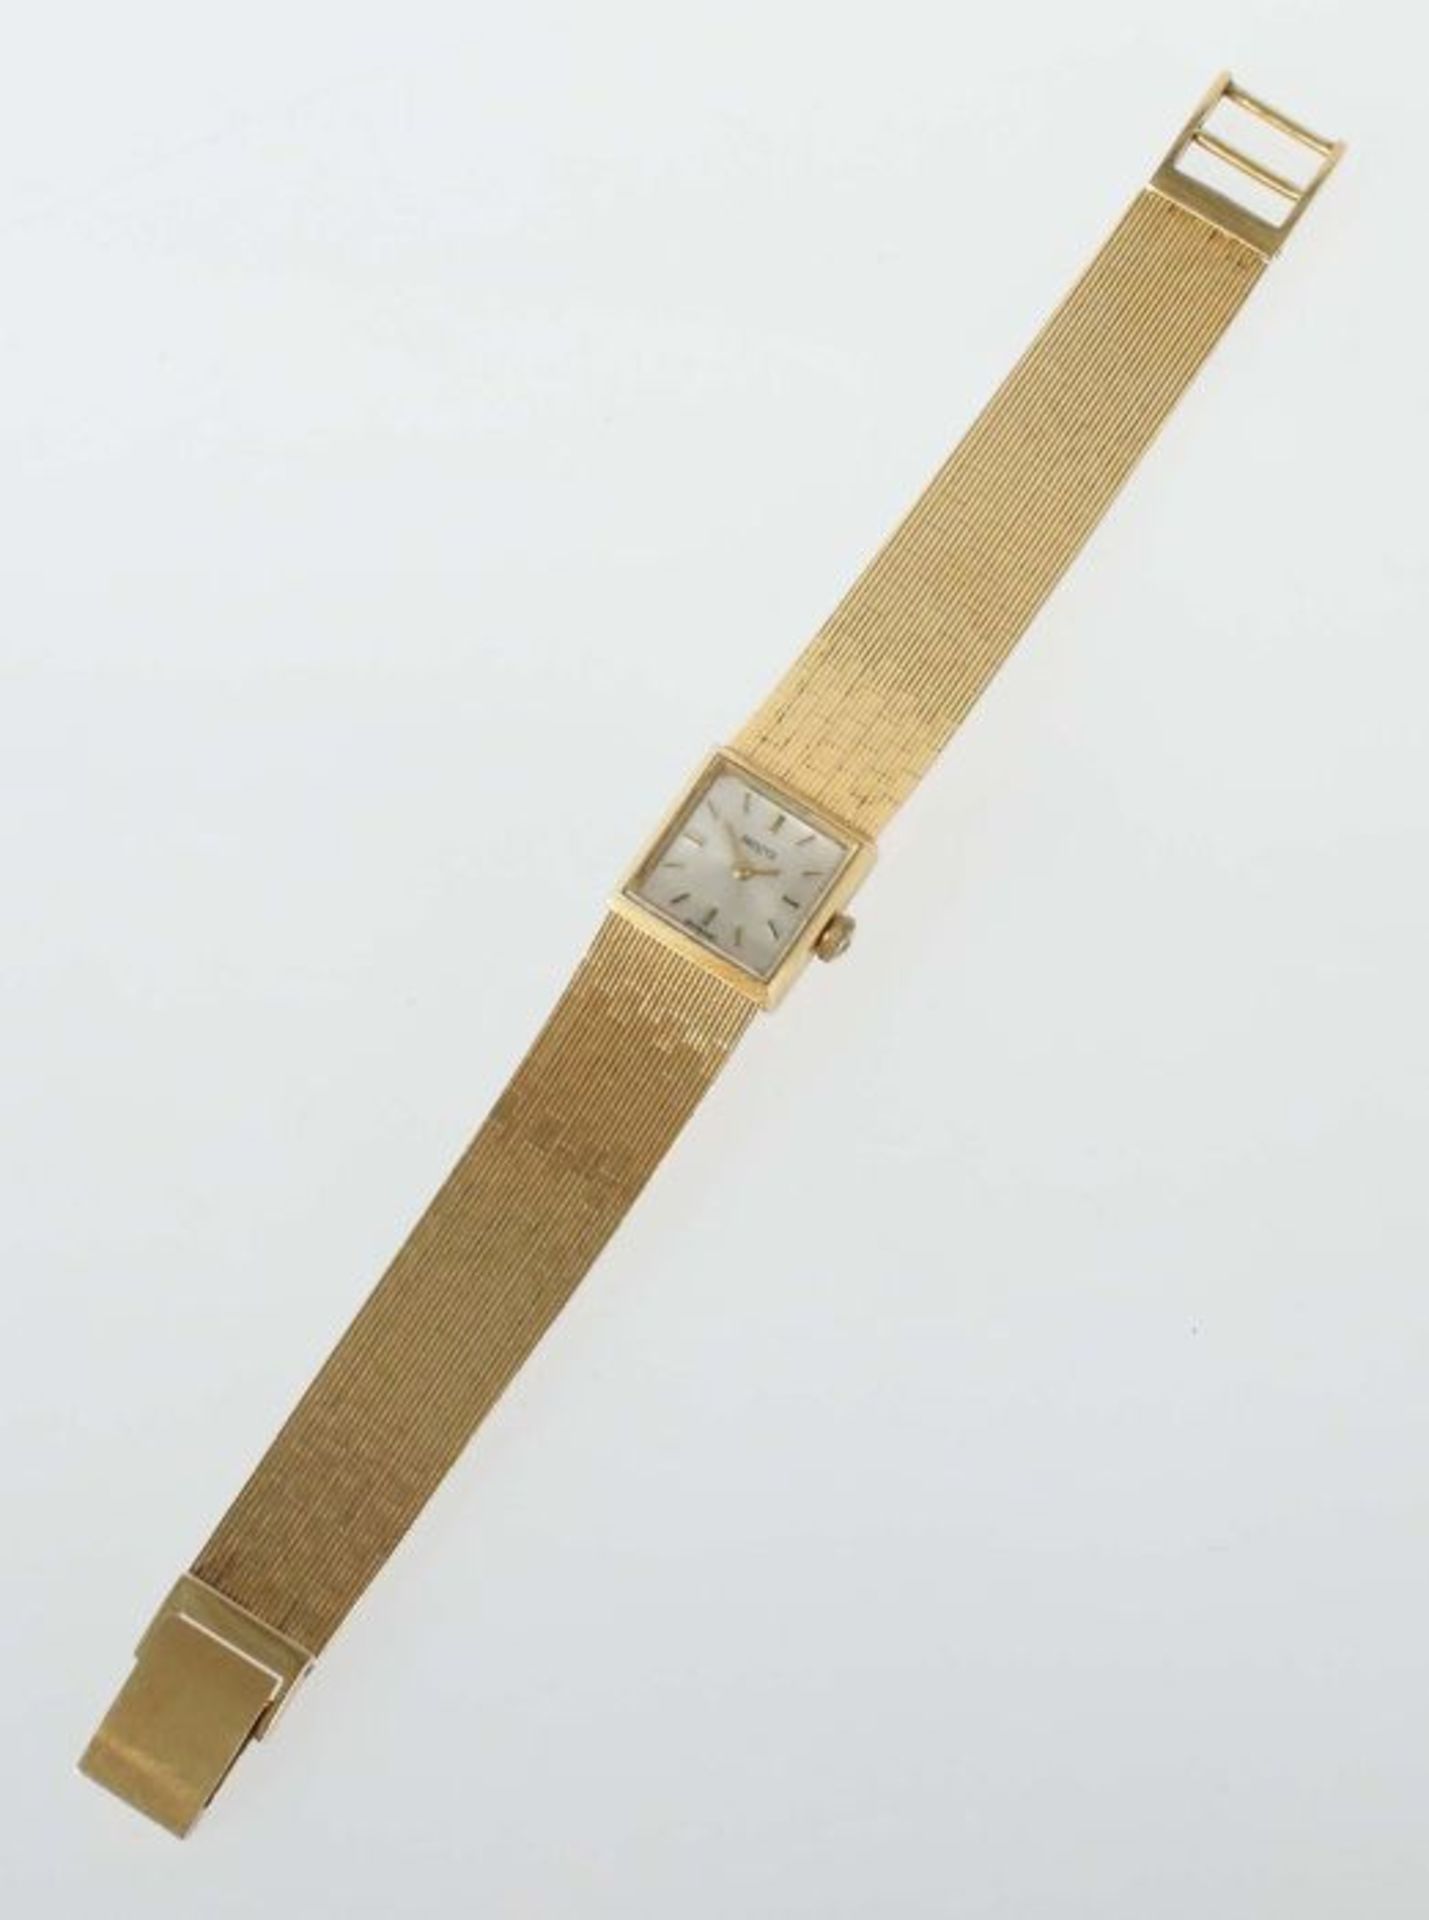 Damenarmbanduhr Provita, Schweiz, 1960/70er Jahre, Gelbgold 750, quadratisches Gehäuse mit - Bild 2 aus 3